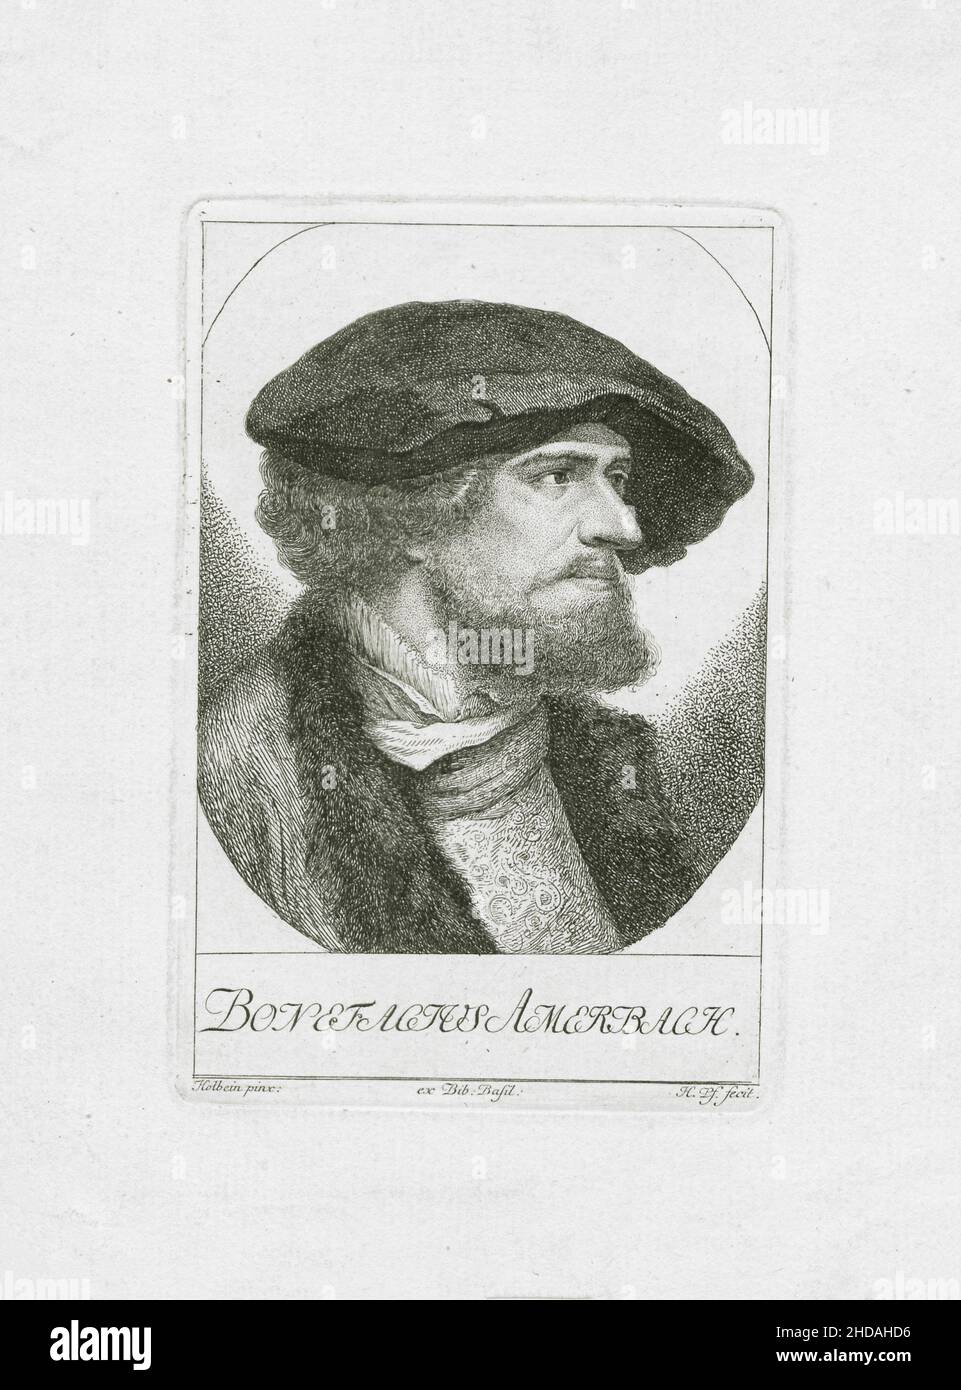 Porträt von Bonifacius Amerbach. 1780 Bonifacius Amerbach (1495 – 1562) war Jurist, Gelehrter, einflussreicher Humanist und Rektor der Universit Stockfoto